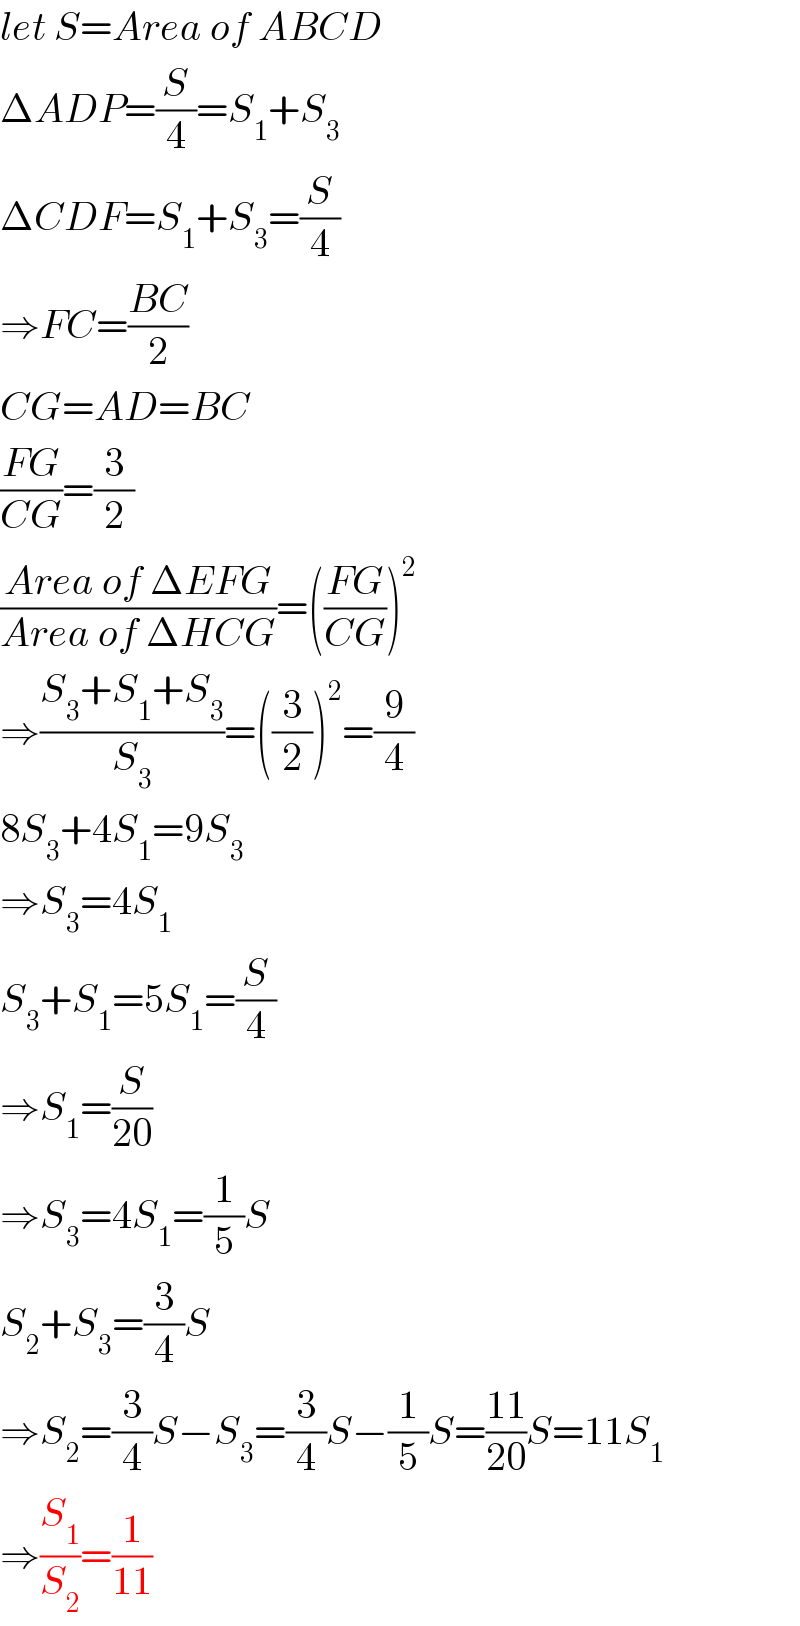 let S=Area of ABCD  ΔADP=(S/4)=S_1 +S_3   ΔCDF=S_1 +S_3 =(S/4)  ⇒FC=((BC)/2)  CG=AD=BC  ((FG)/(CG))=(3/2)  ((Area of ΔEFG)/(Area of ΔHCG))=(((FG)/(CG)))^2   ⇒((S_3 +S_1 +S_3 )/S_3 )=((3/2))^2 =(9/4)  8S_3 +4S_1 =9S_3   ⇒S_3 =4S_1   S_3 +S_1 =5S_1 =(S/4)  ⇒S_1 =(S/(20))  ⇒S_3 =4S_1 =(1/5)S  S_2 +S_3 =(3/4)S  ⇒S_2 =(3/4)S−S_3 =(3/4)S−(1/5)S=((11)/(20))S=11S_1   ⇒(S_1 /S_2 )=(1/(11))  